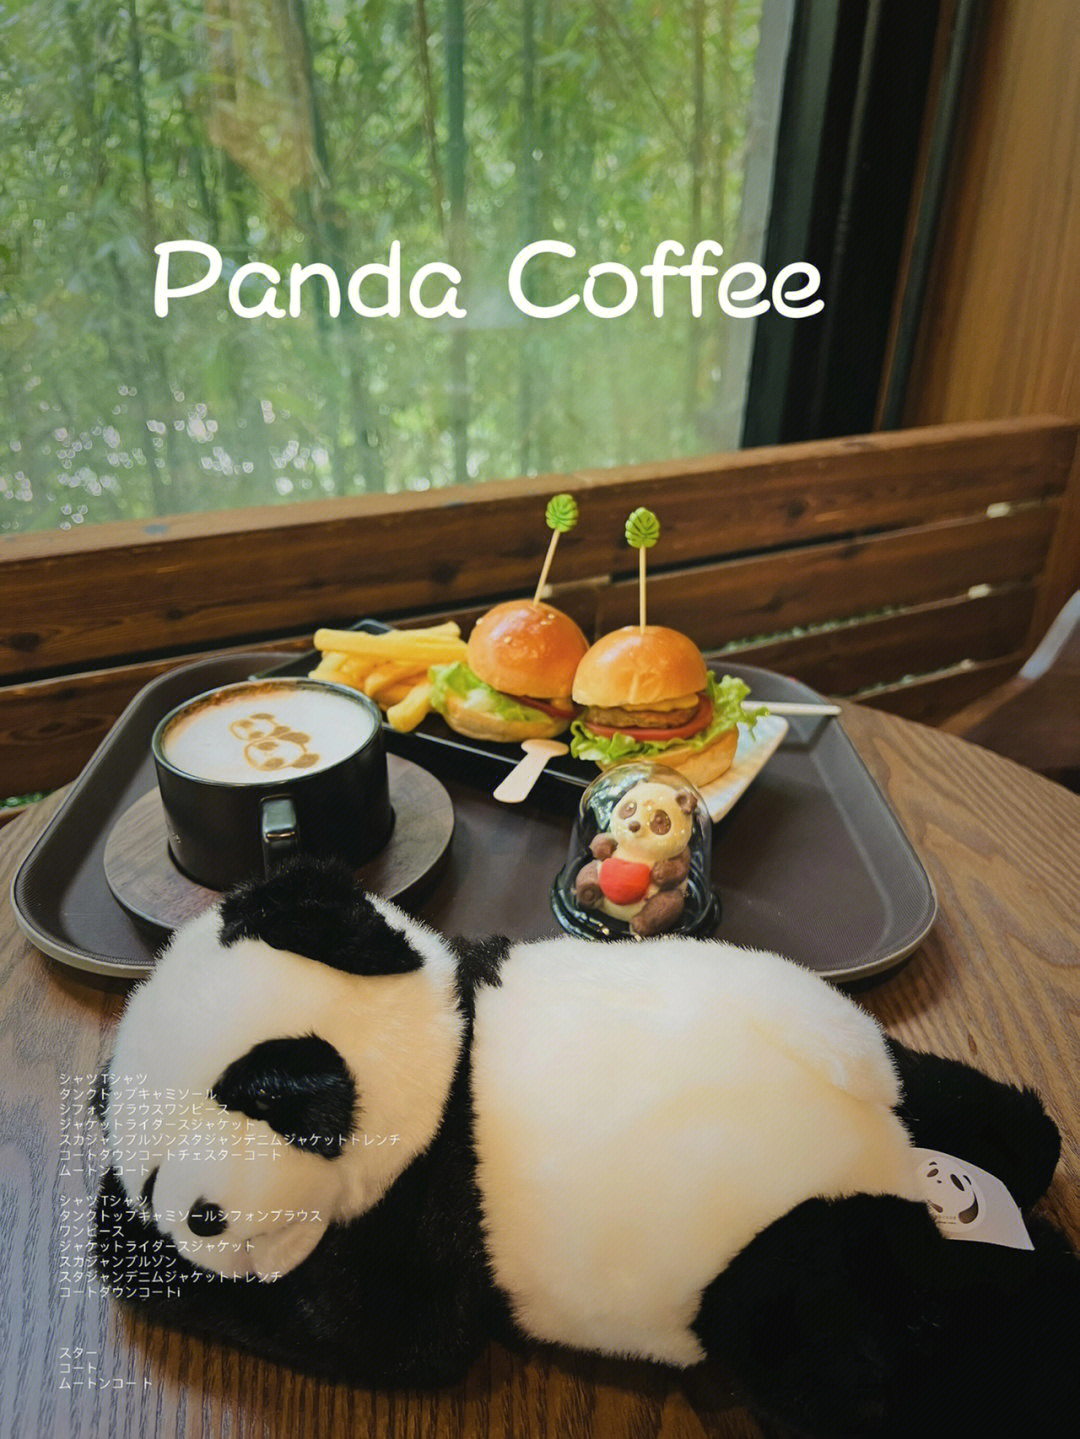 逛动物园无意中发现的熊猫94咖啡馆需要单独买票 进熊猫馆营业时间